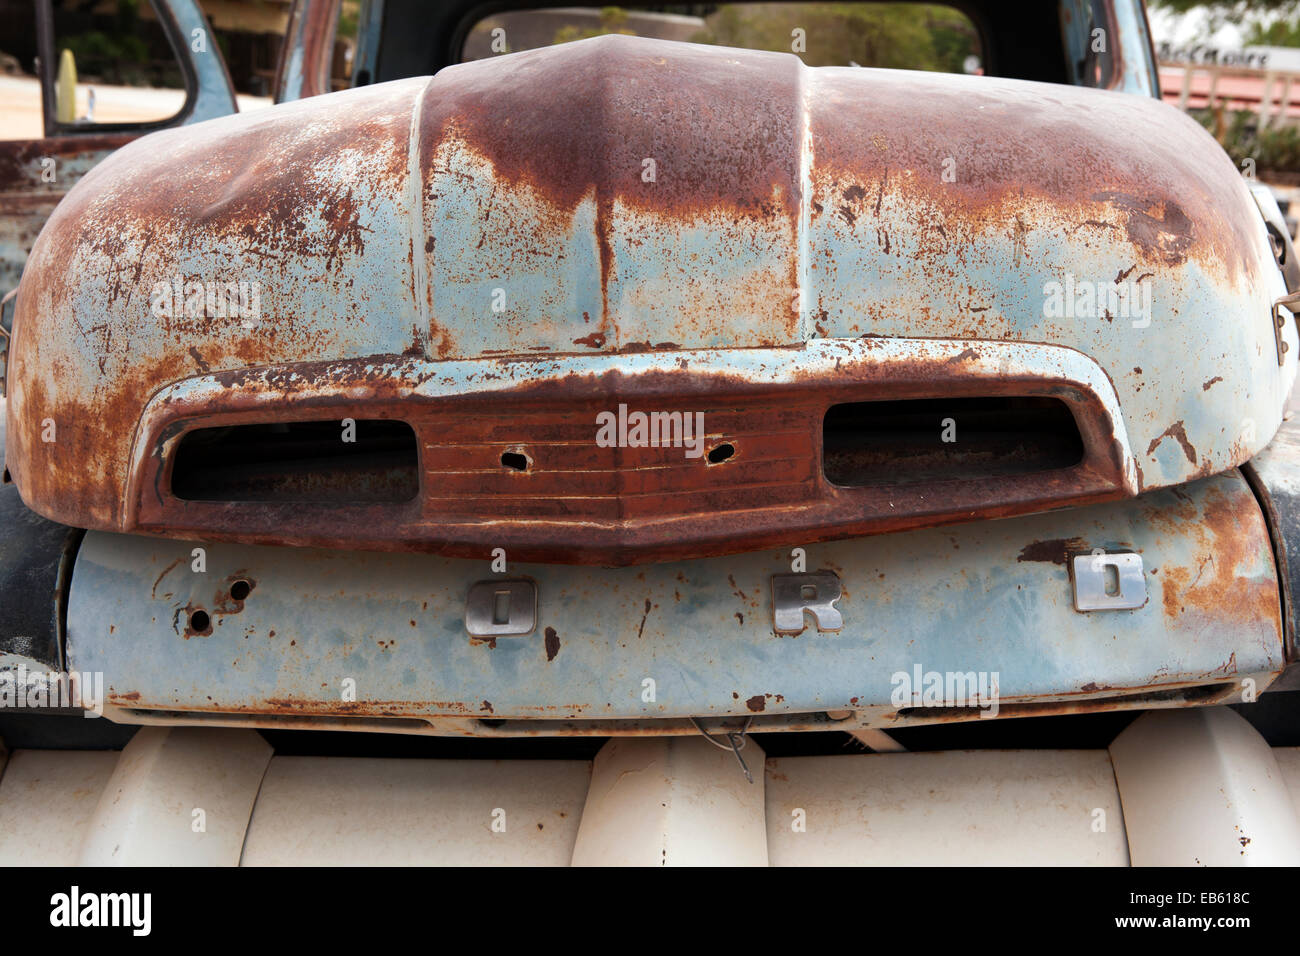 Des voitures abandonnées en Solitaire - Khomas Region, Namibie, Afrique Banque D'Images